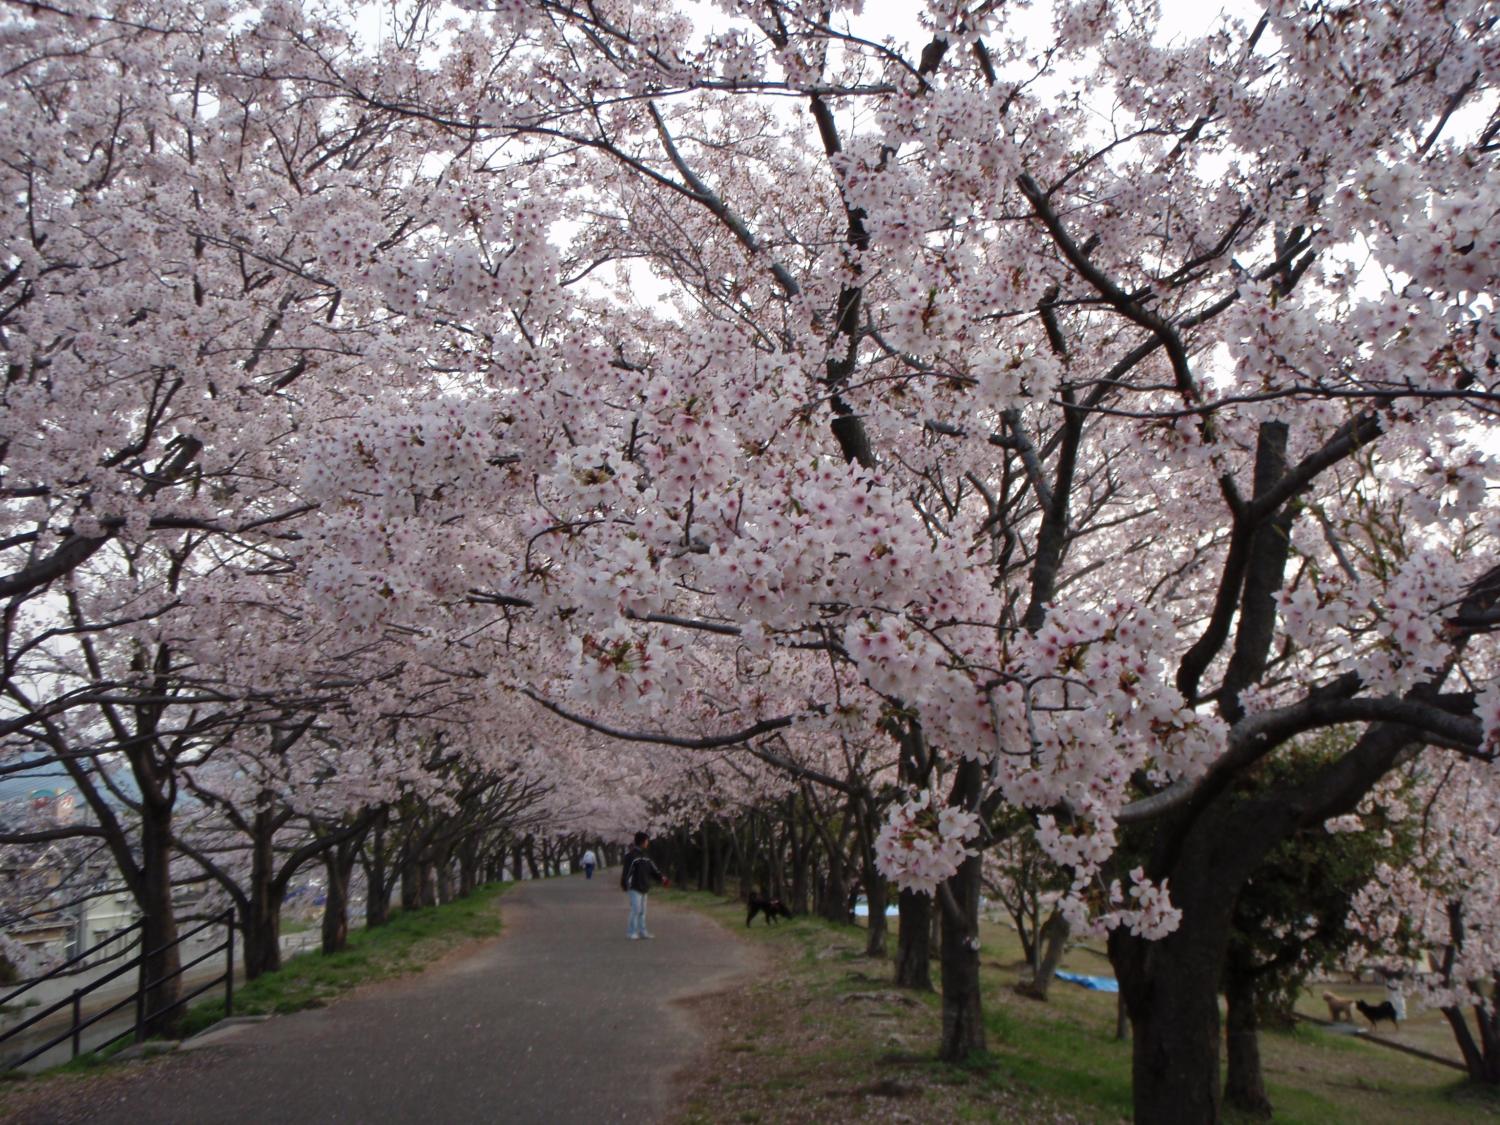  Gambar Pemandangan Bunga Sakura gambar pemandangan bunga 